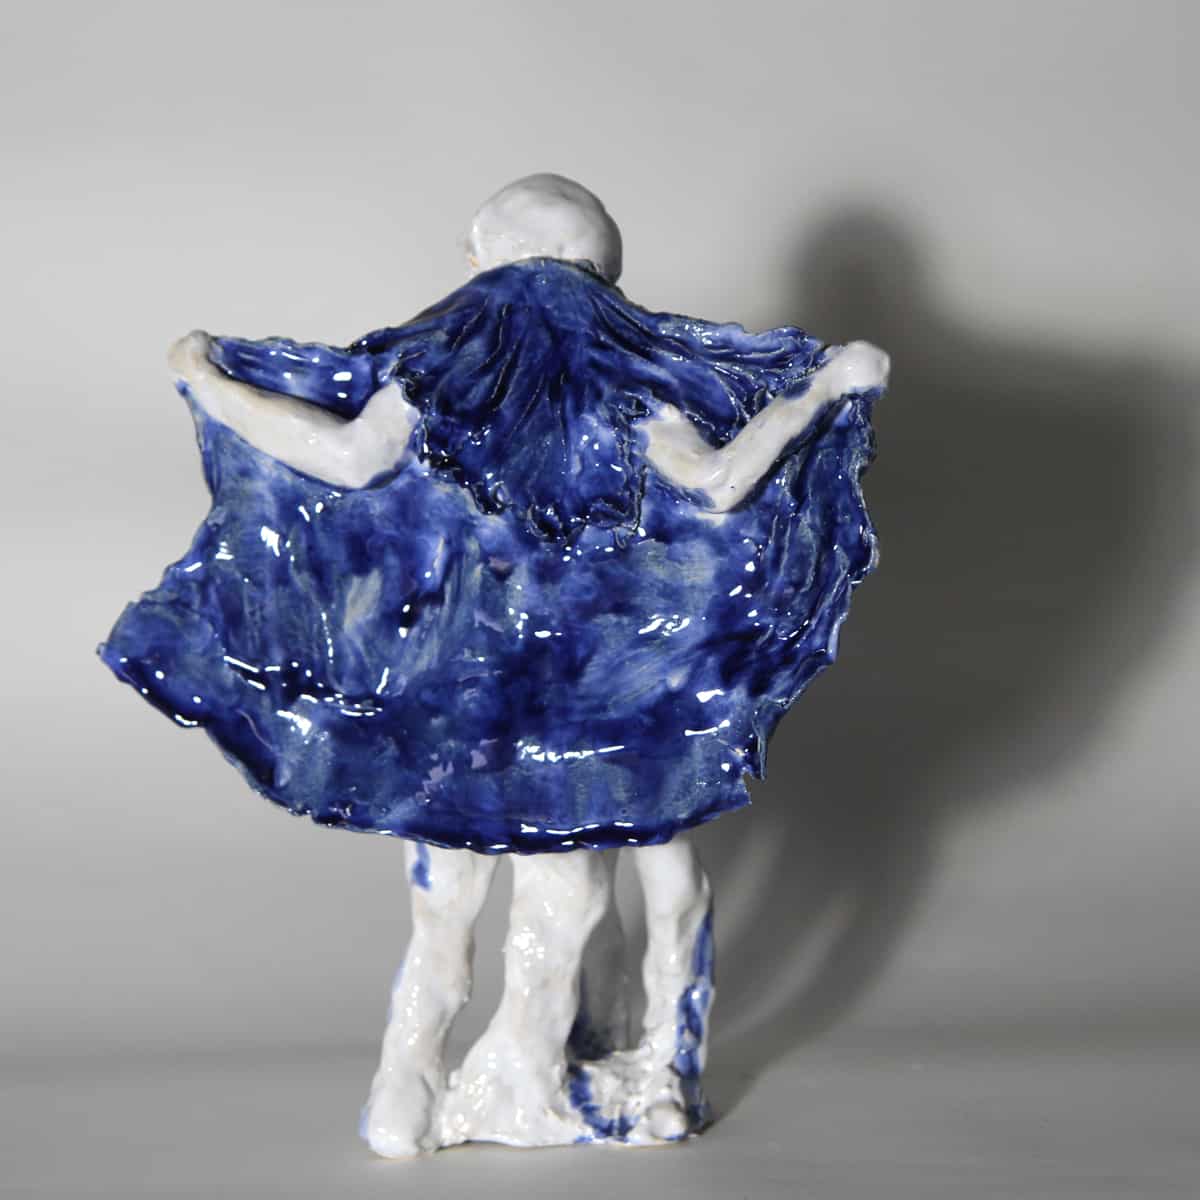 MYSTERE série bleus, sculpture céramique Dia25 x 31H cm  BC-2147 ©Bachelot&Caron